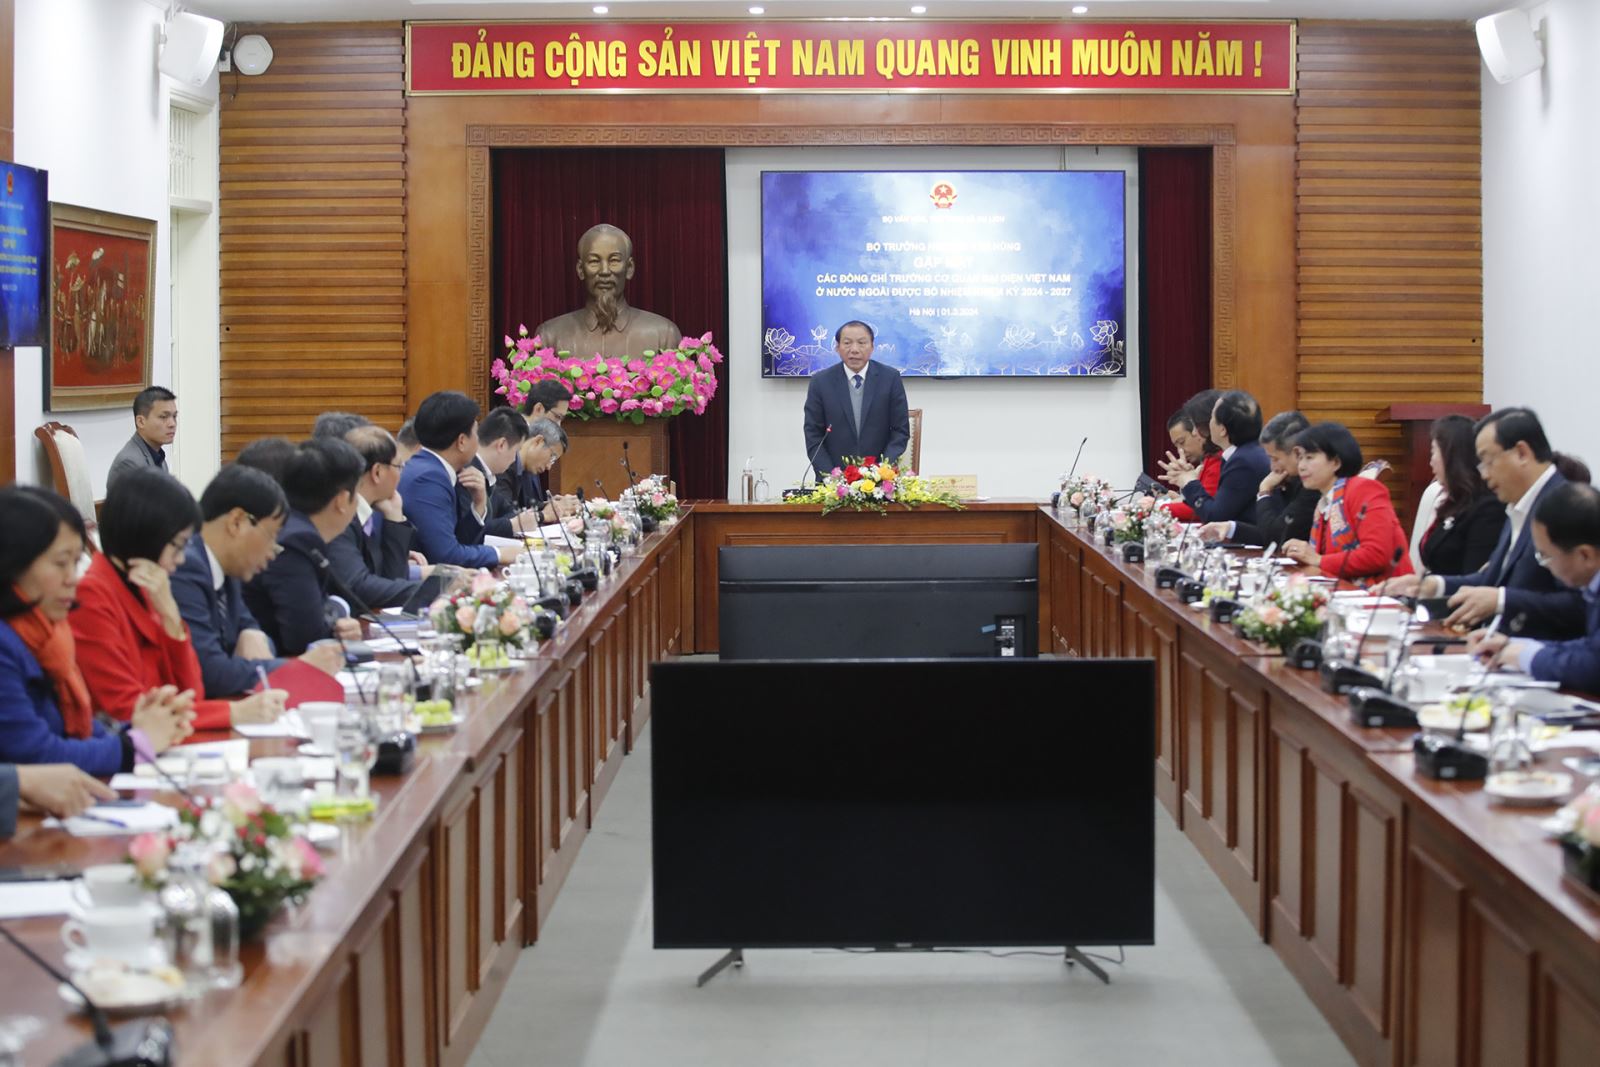 Bộ trưởng Nguyễn Văn Hùng: Tiếp tục lan tỏa các giá trị tốt đẹp của văn hóa Việt Nam đến bạn bè quốc tế 